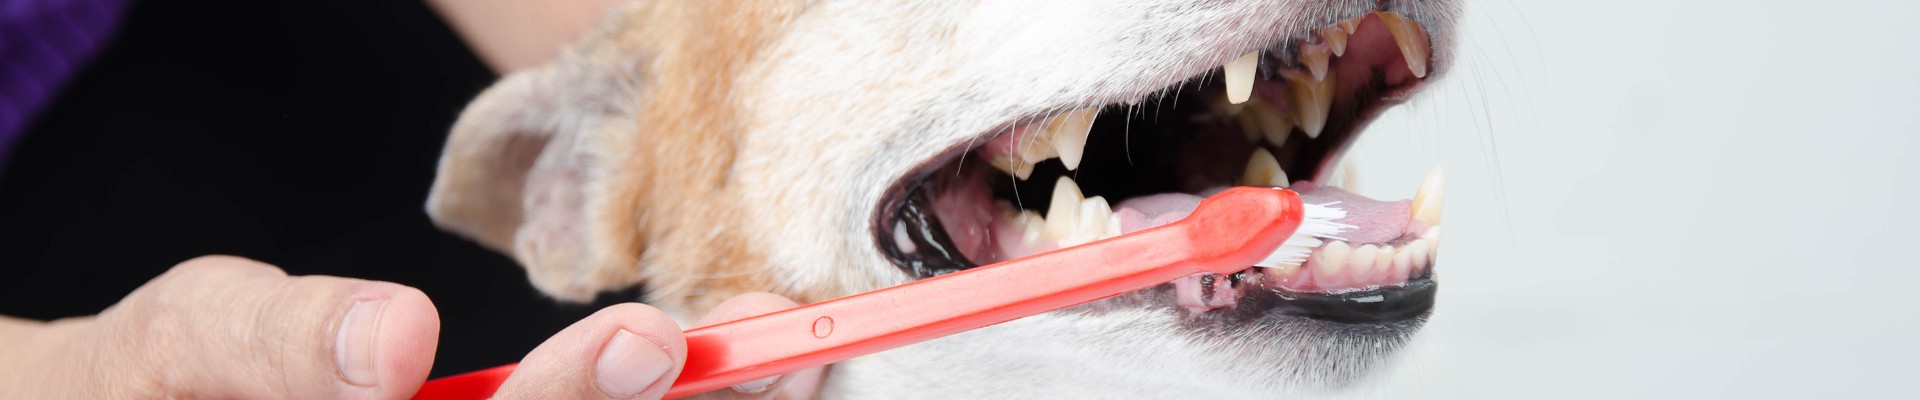 Un perro al que le cepillan los dientes 